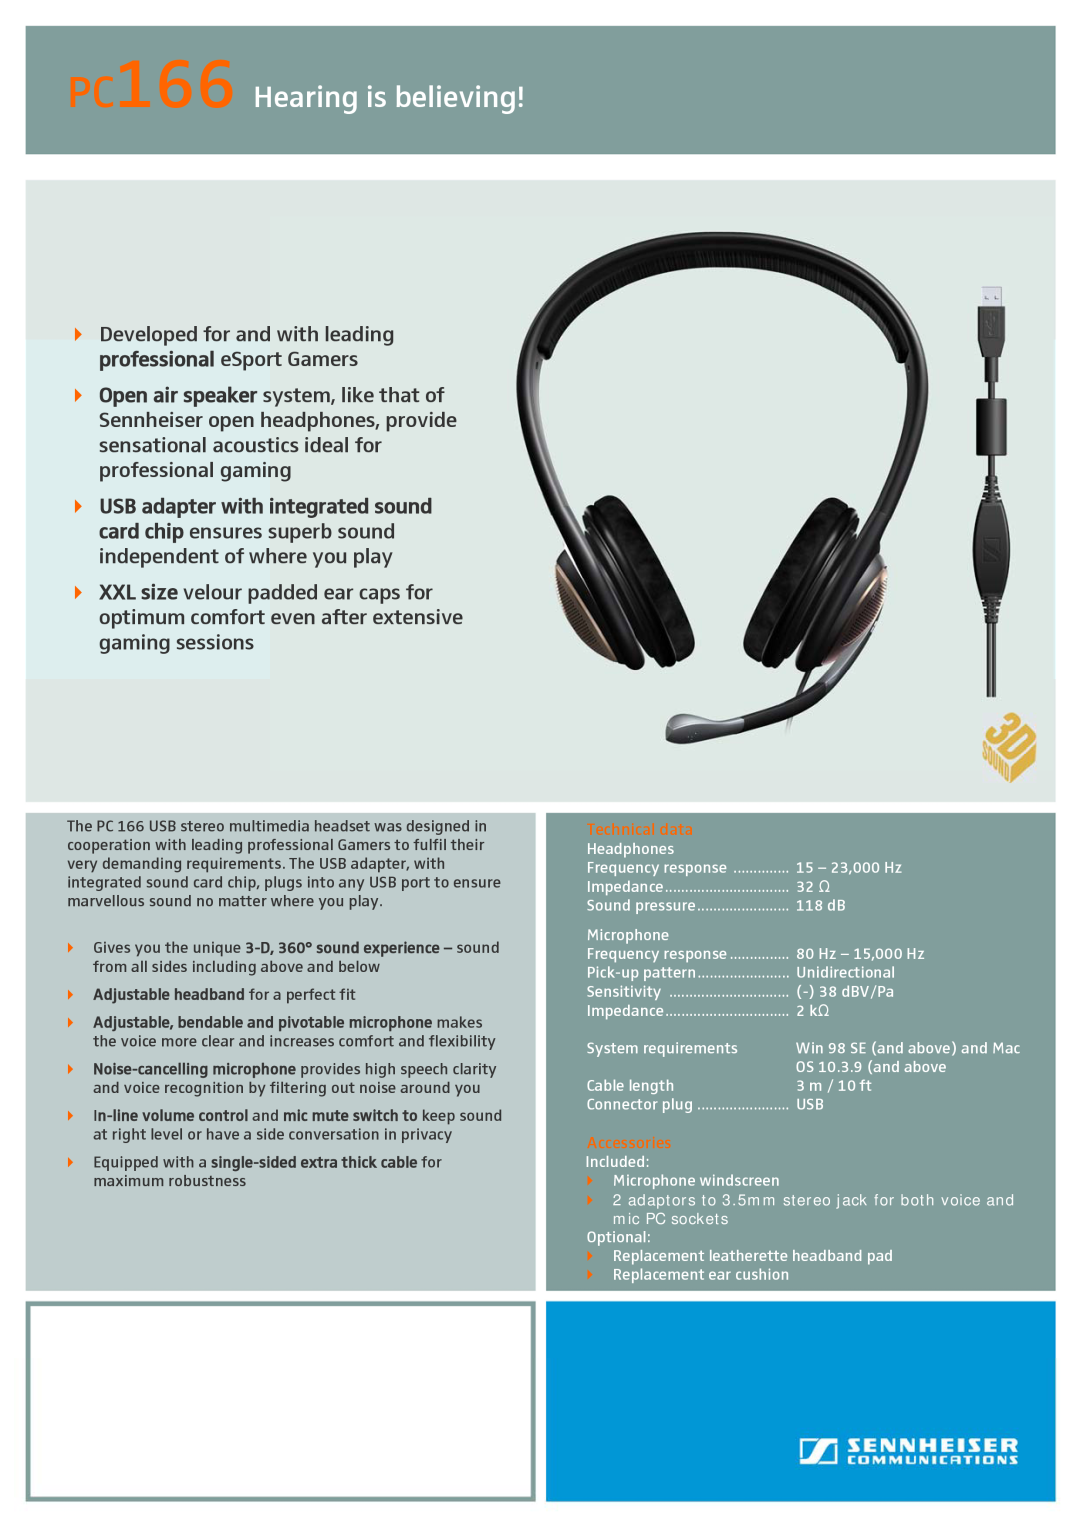 Sennheiser manual PC166 Hearing is believing 